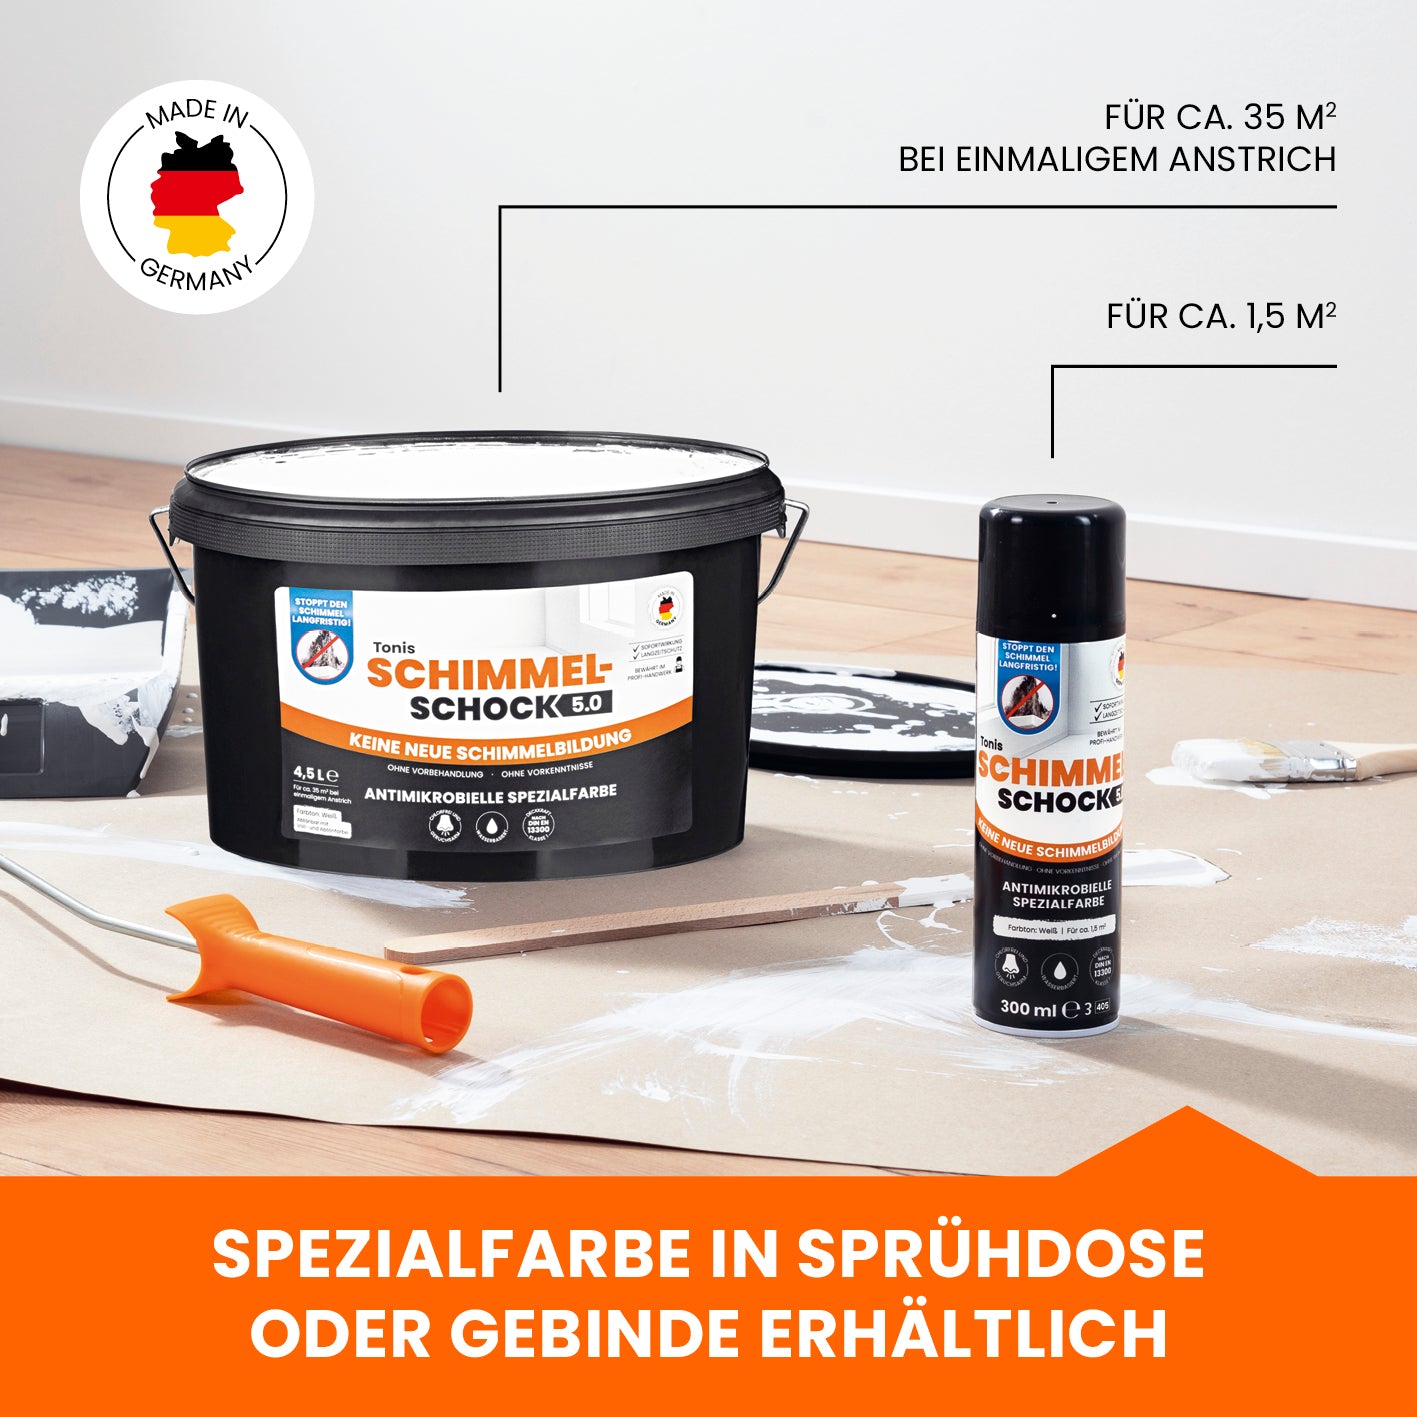 Tonis SCHIMMELSCHOCK 5.0 - Antimikrobielle Spezialfarbe - 4er-Set (4x 300 ml für 6 m2) - weiß